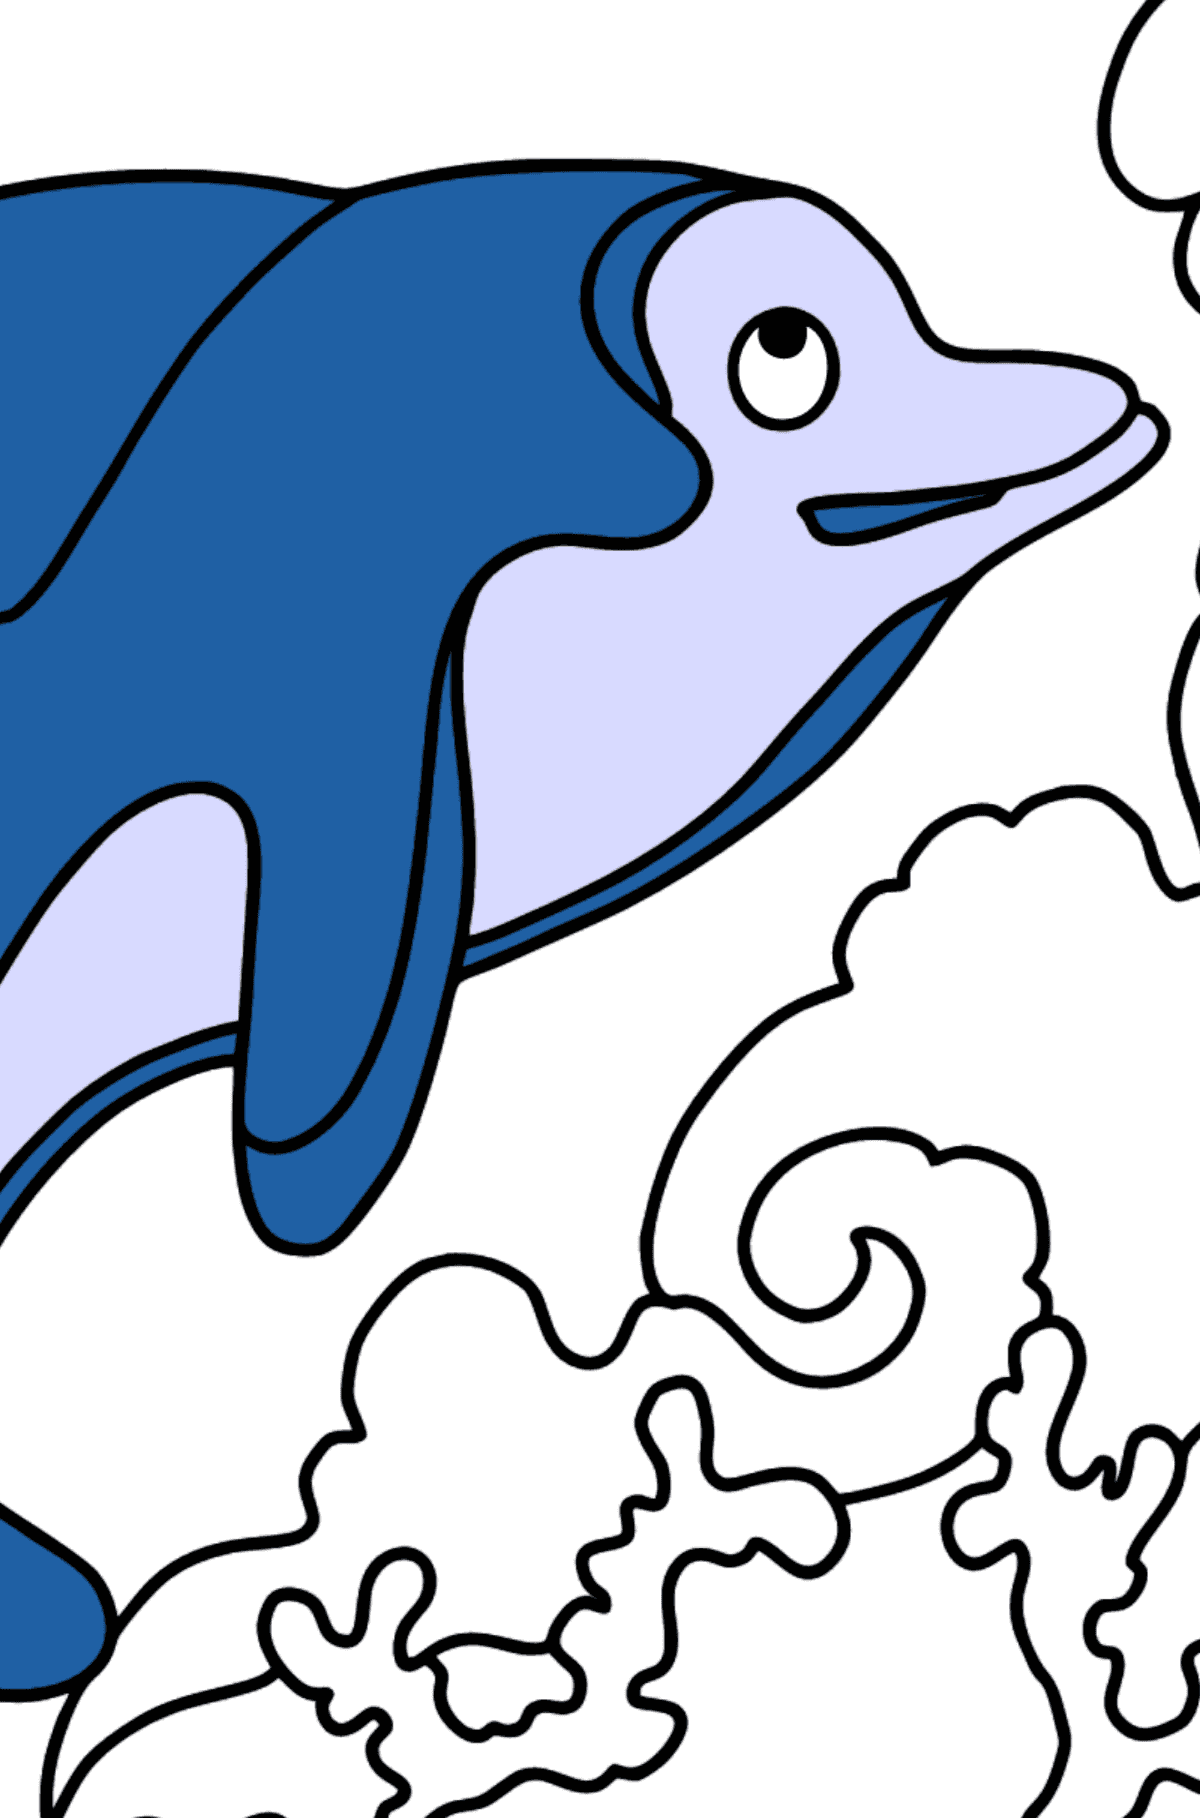 Раскраска дельфин для печати (легко) - Картинка высокого качества для Детей